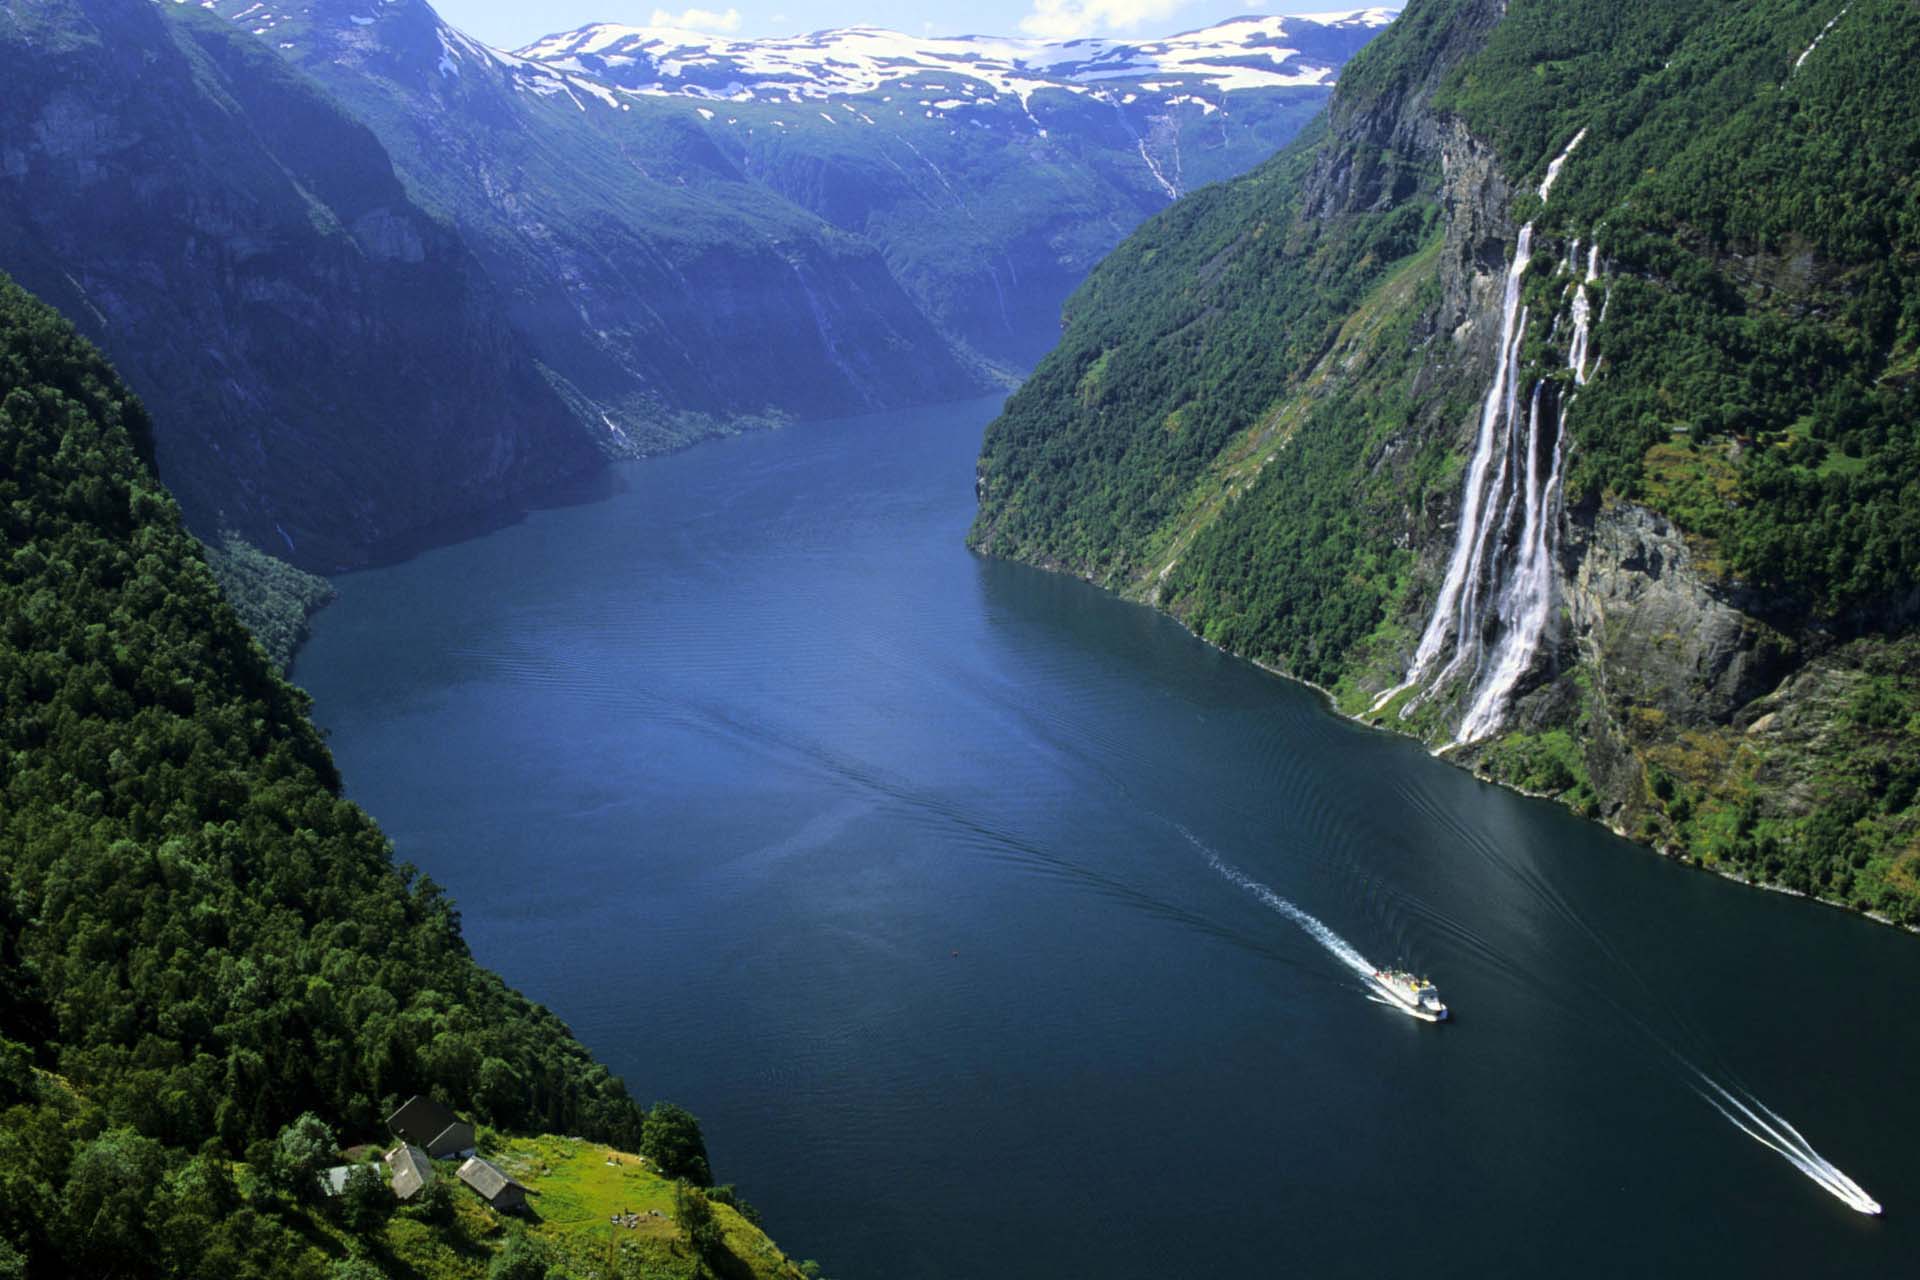 Cruise liner ide pozdĺž fjordu, pohľad zhora